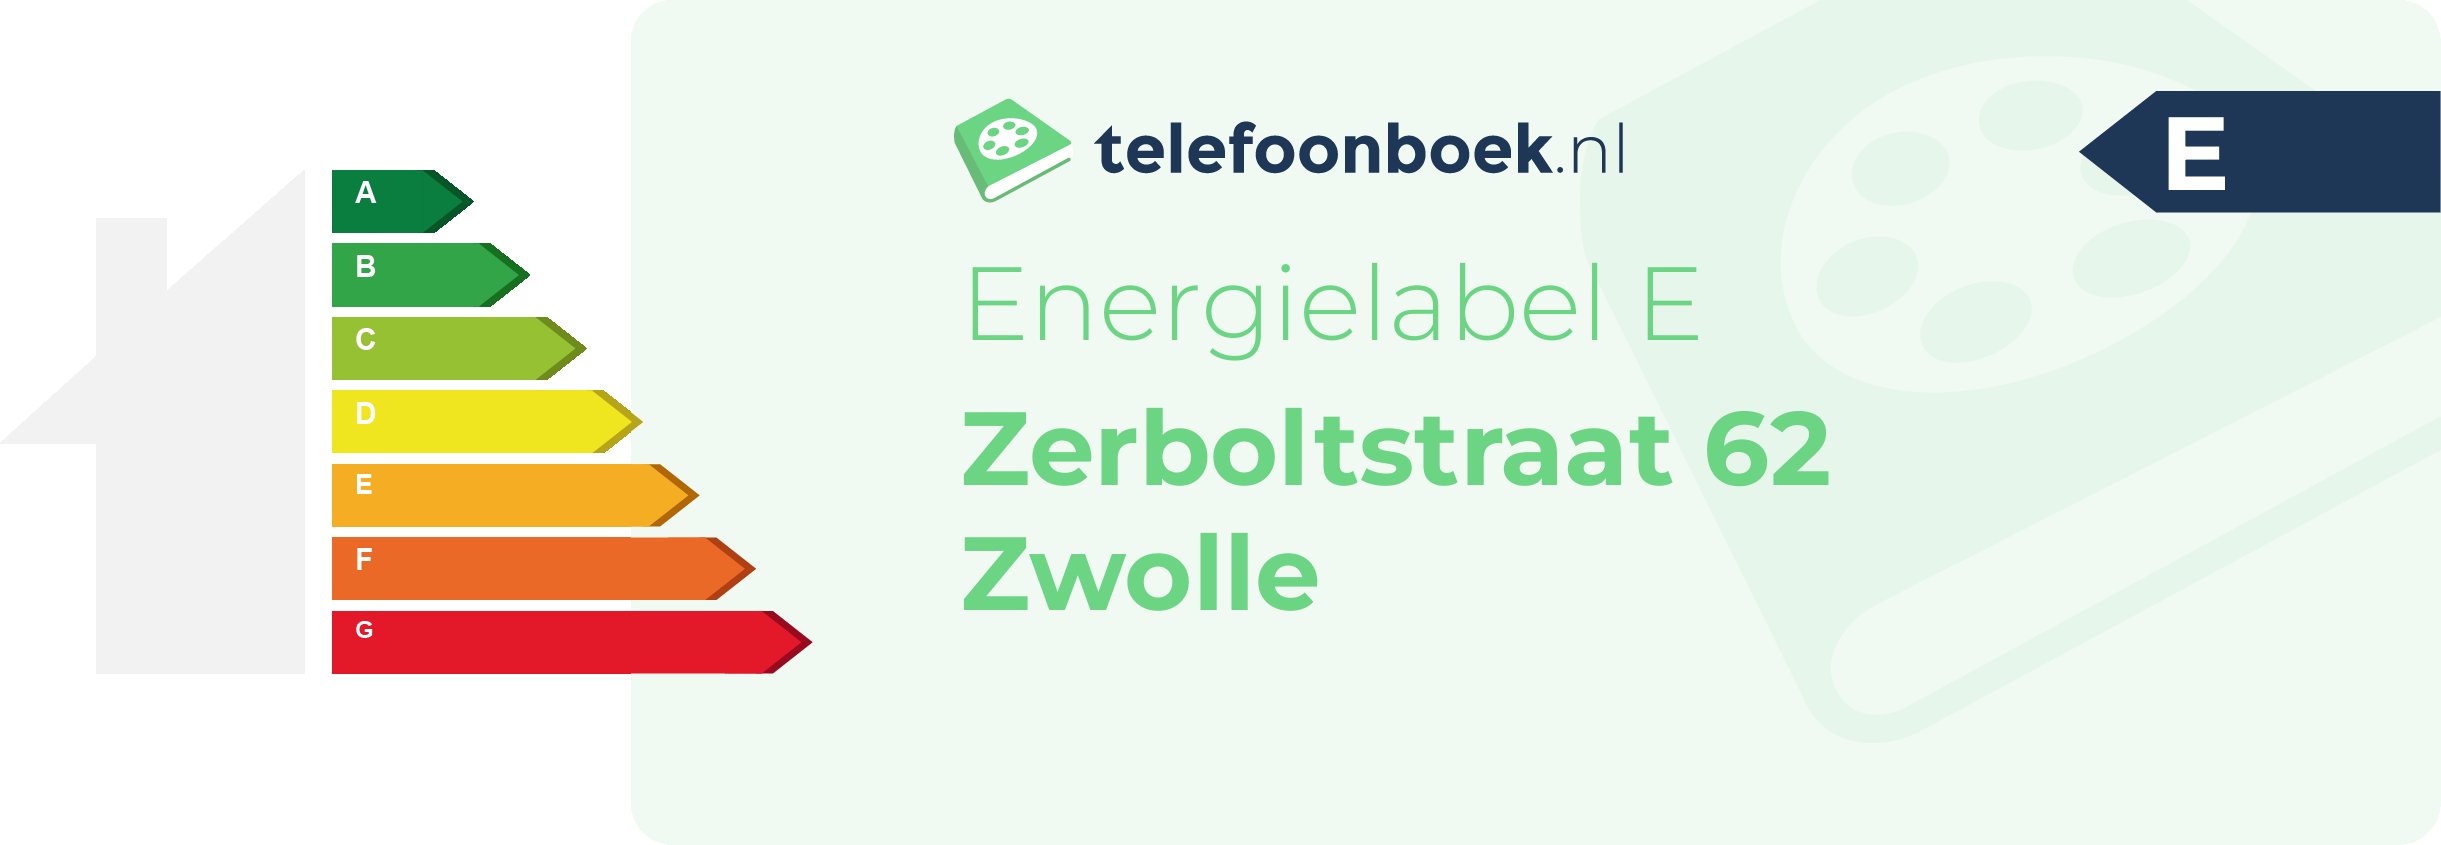 Energielabel Zerboltstraat 62 Zwolle